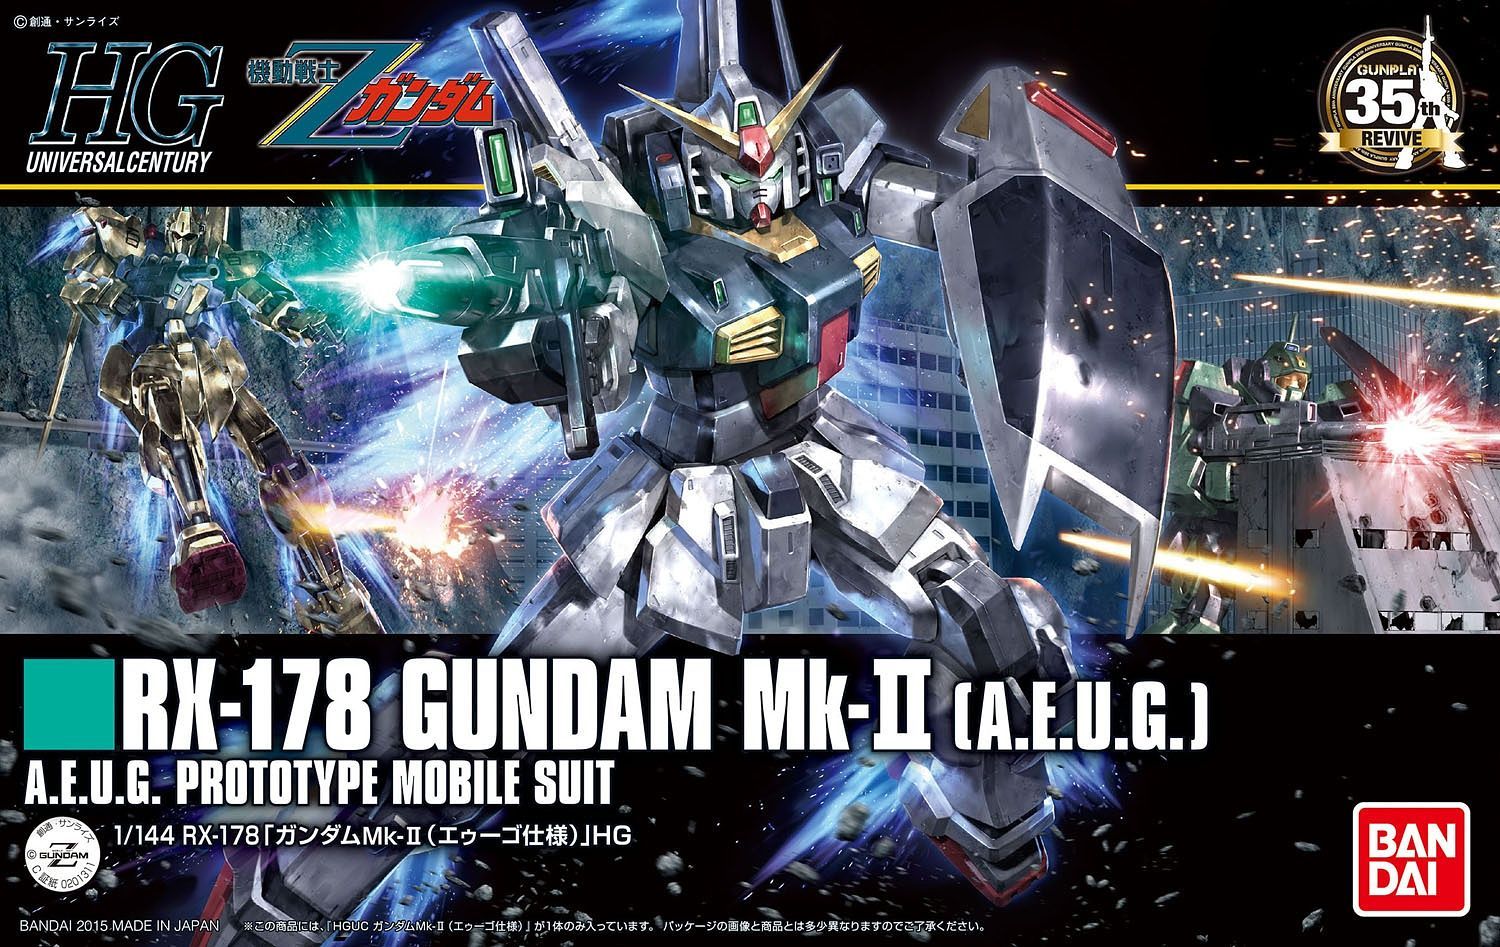 HGUC #193 RX-178 Gundam MK-II Ver. [A.E.U.G] – The Gundam Place Store